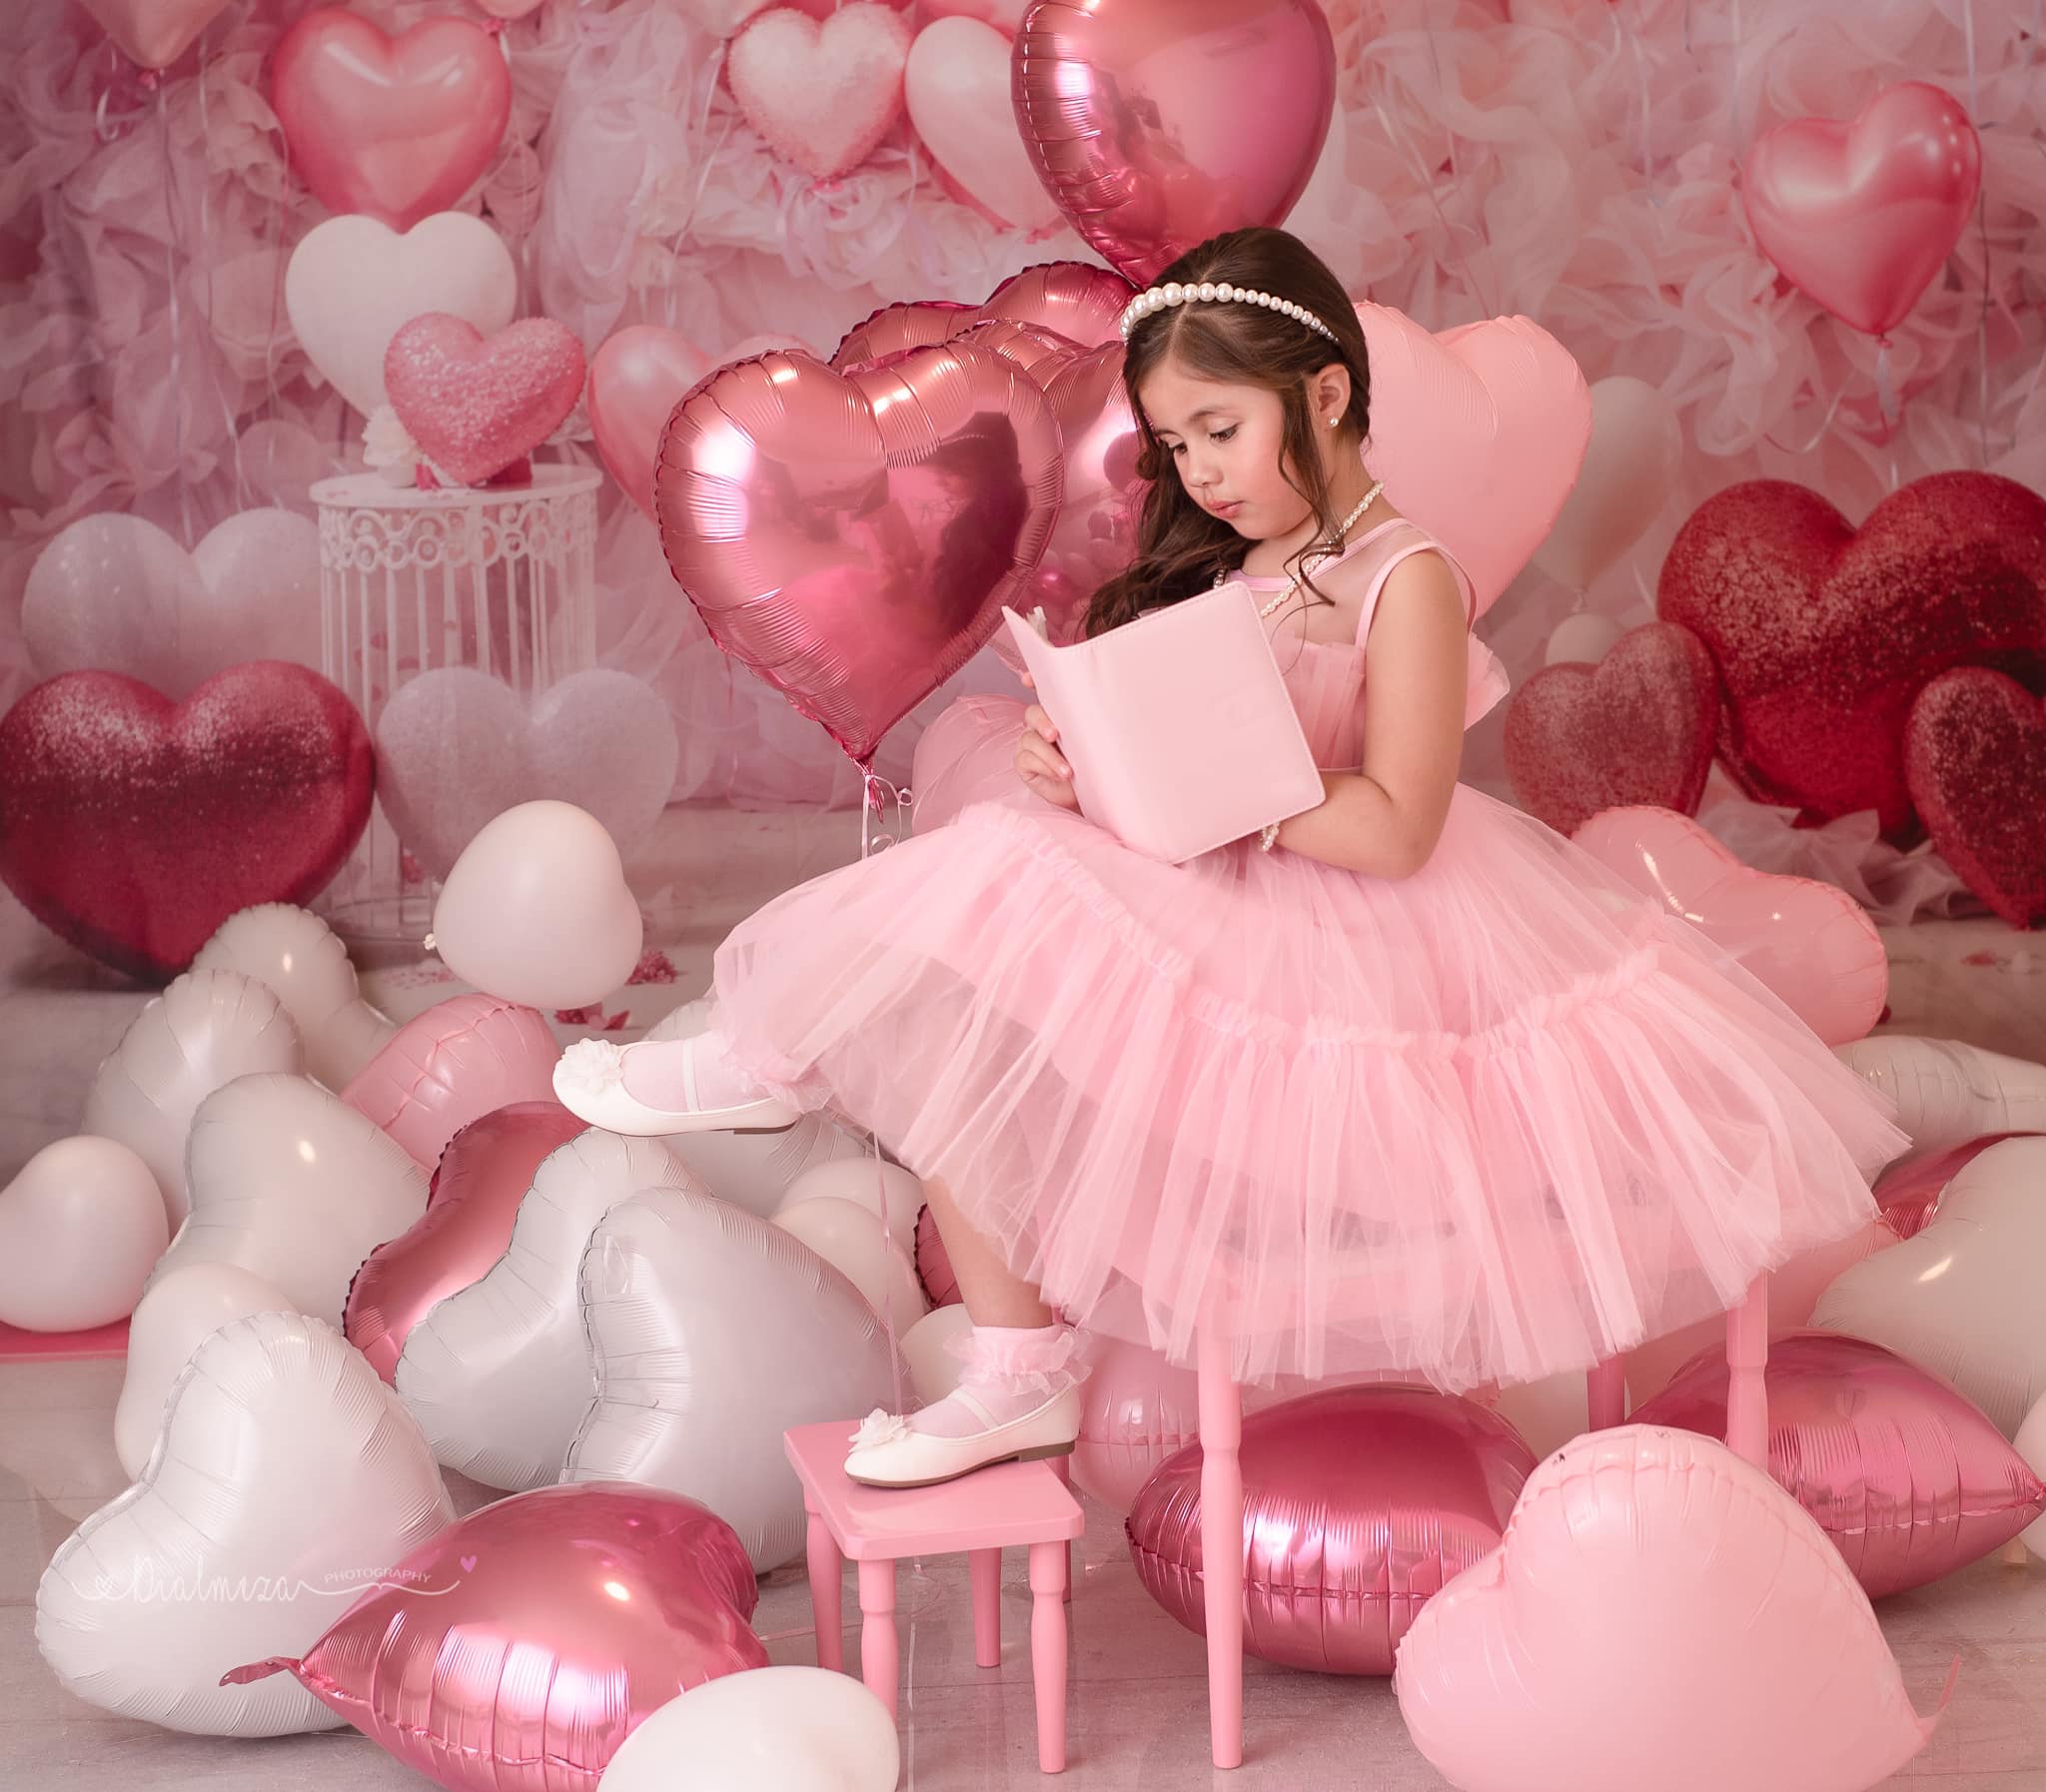 Kate Valentinstag Rosa Liebe Herz Ballon Romantische Raum Hintergrund von Emetselch